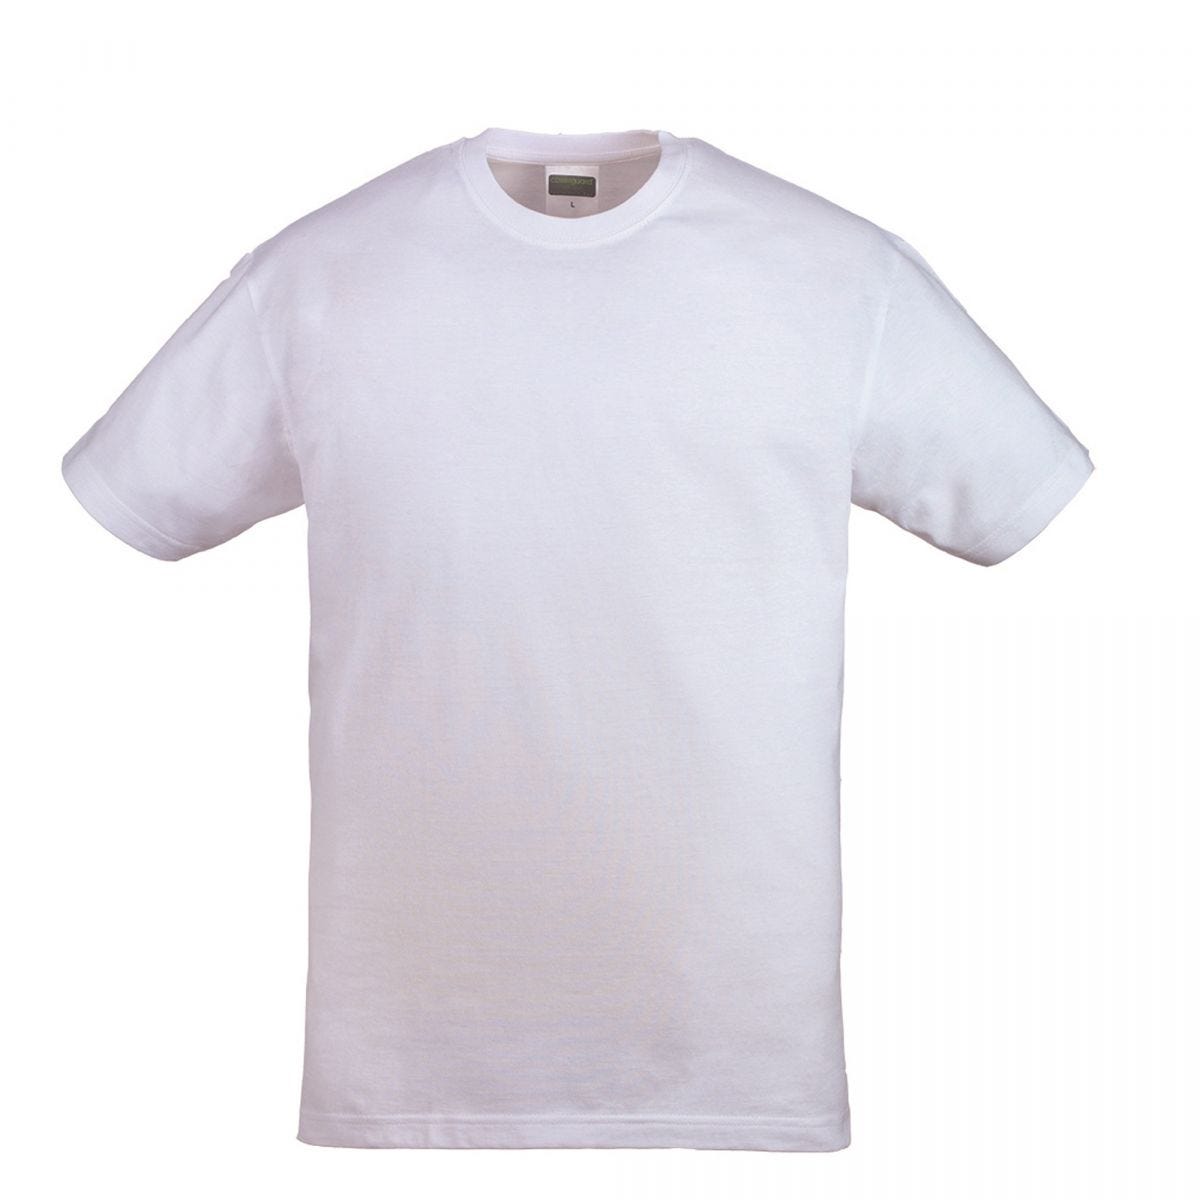 HIKE T-shirt MC blanc, 100% coton, 190g/m² - COVERGUARD - Taille L 0